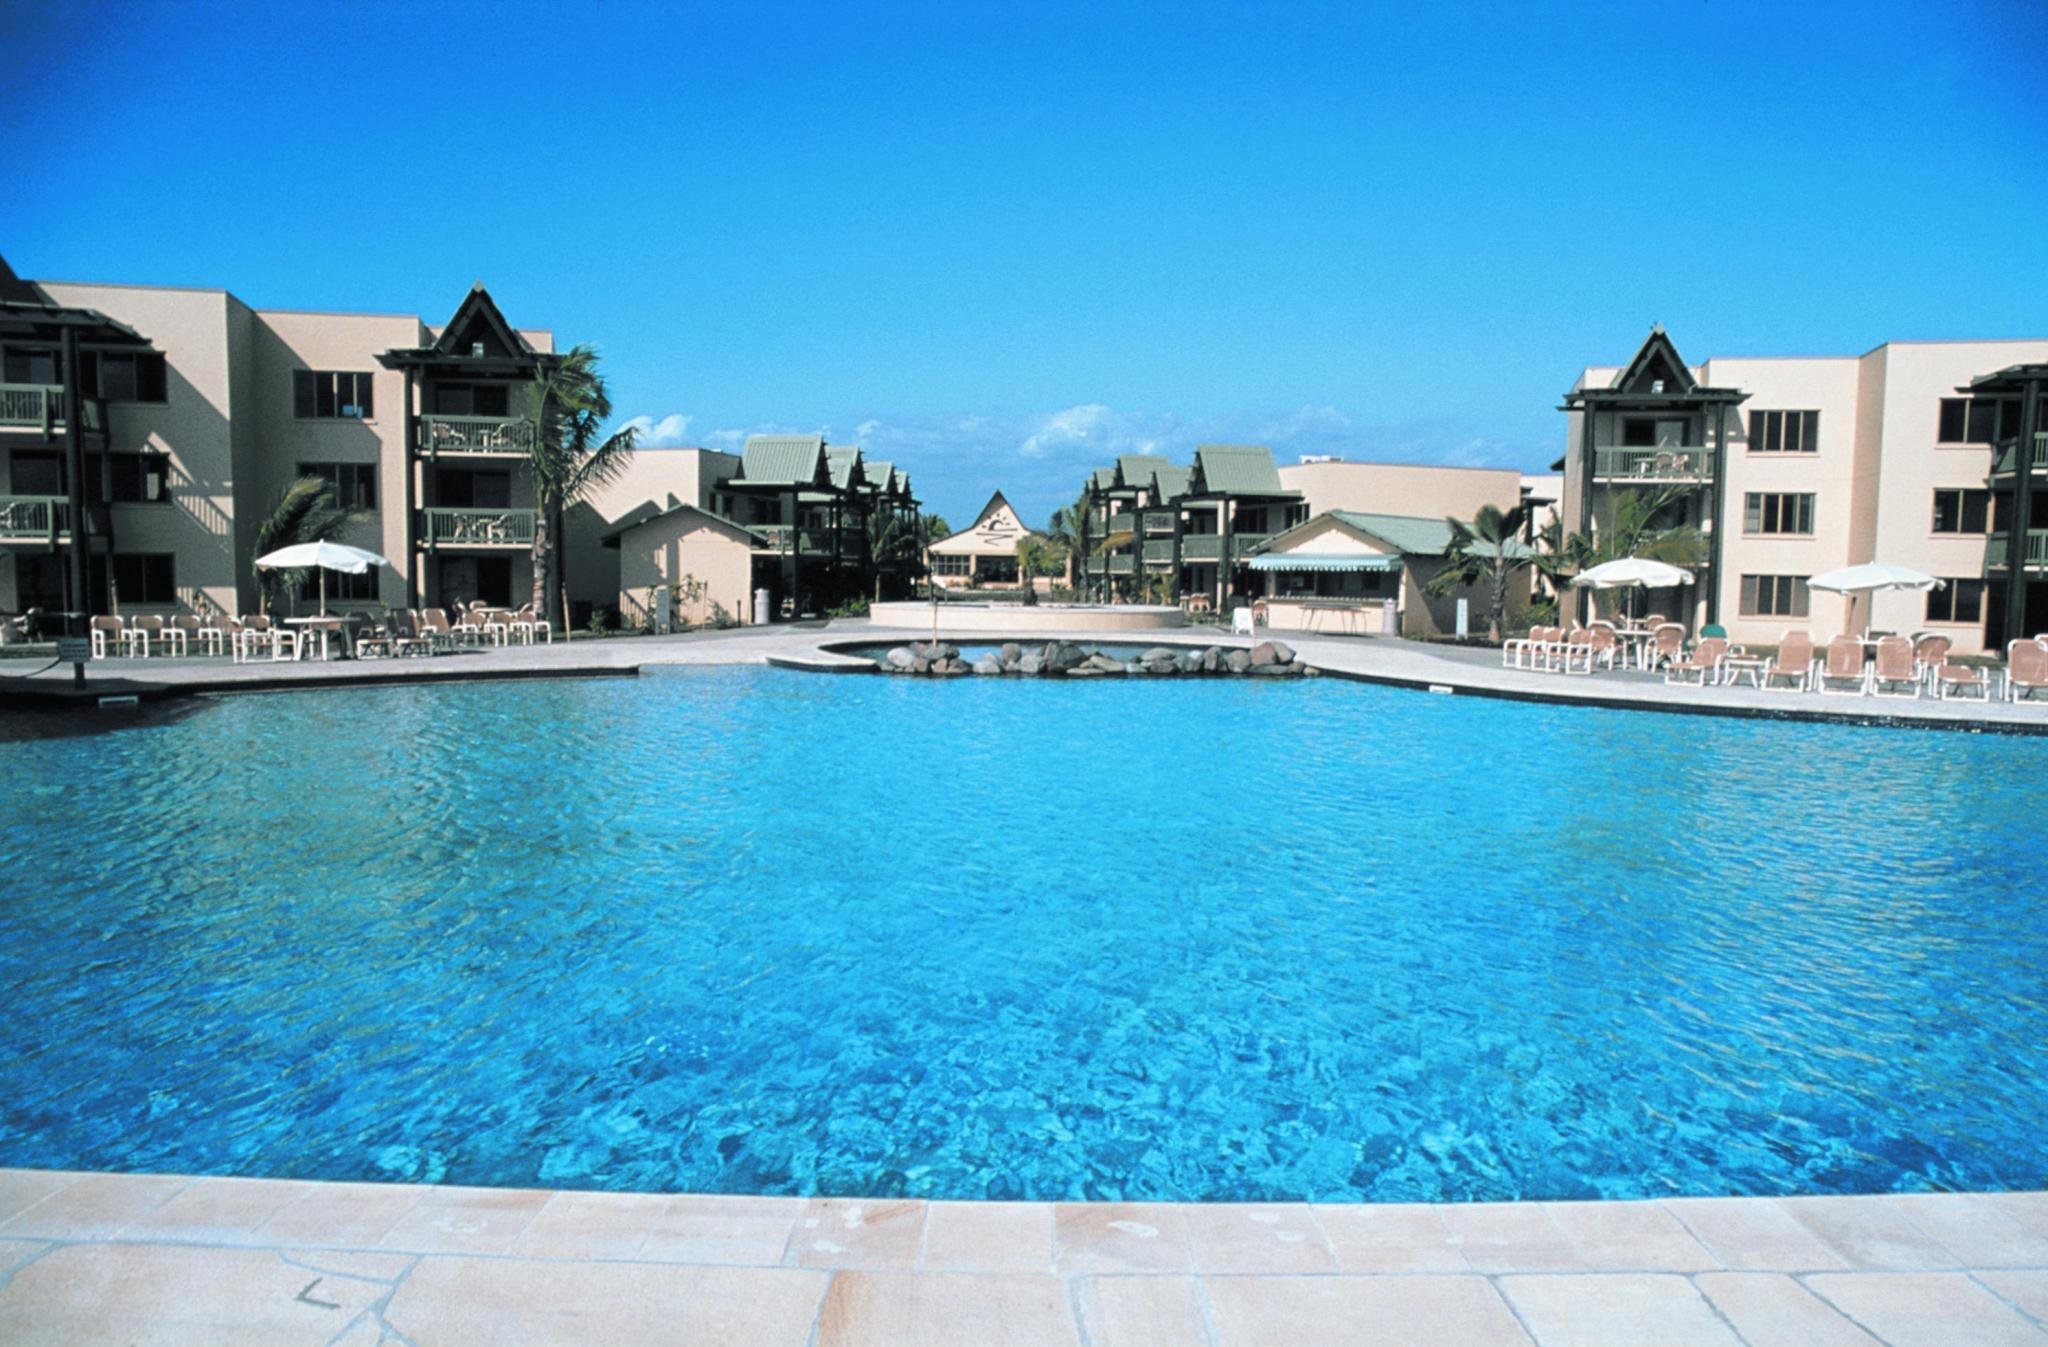 Pool at Denarau Island Resort